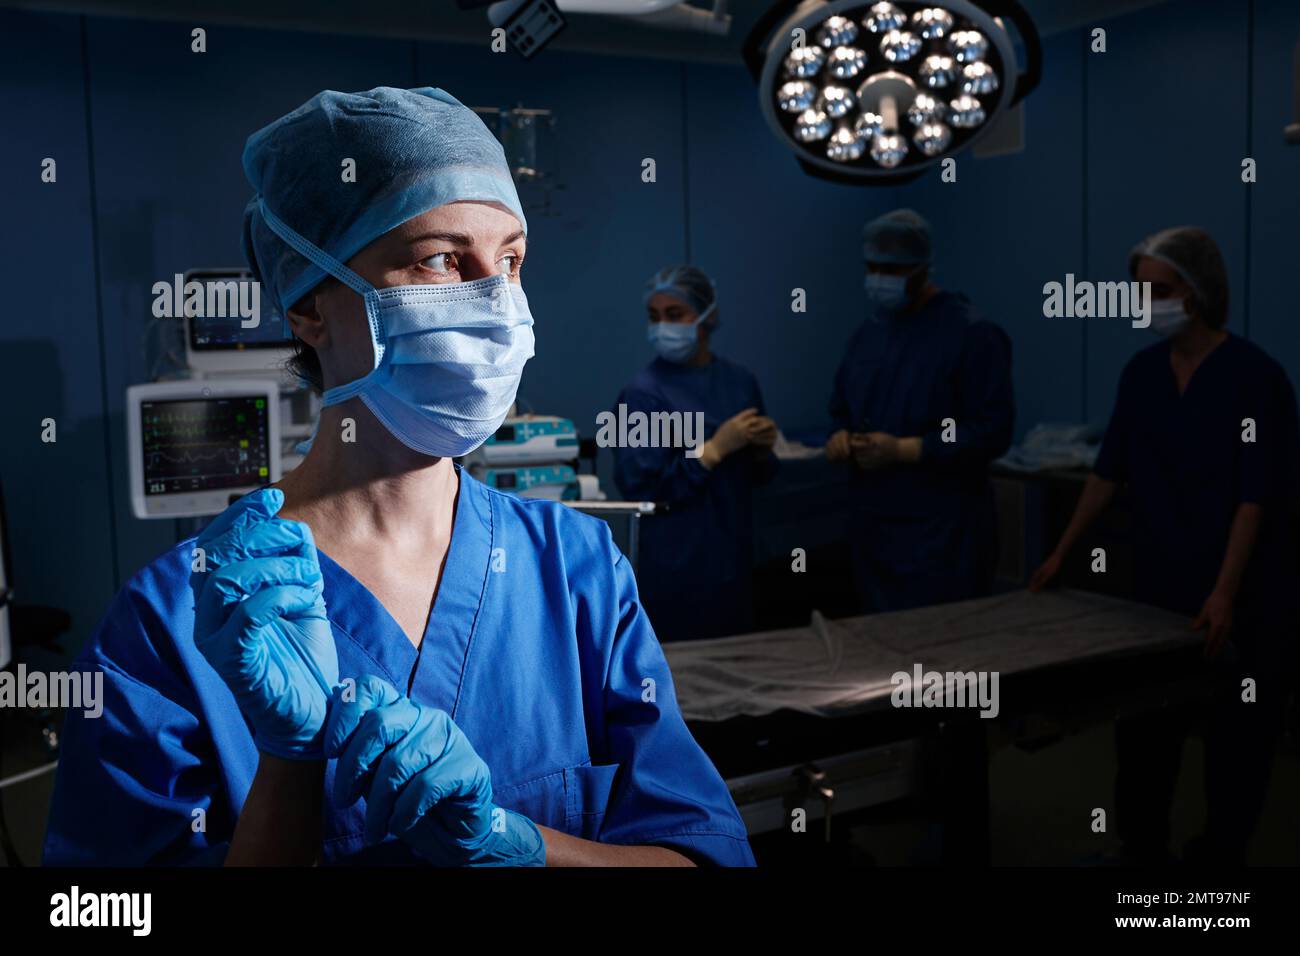 Ritratto illuminato dell'infermiera chirurgica che indossa guanti sterili prima dell'intervento mentre si è in piedi in un reparto operatorio con chirurghi e assistenti Foto Stock